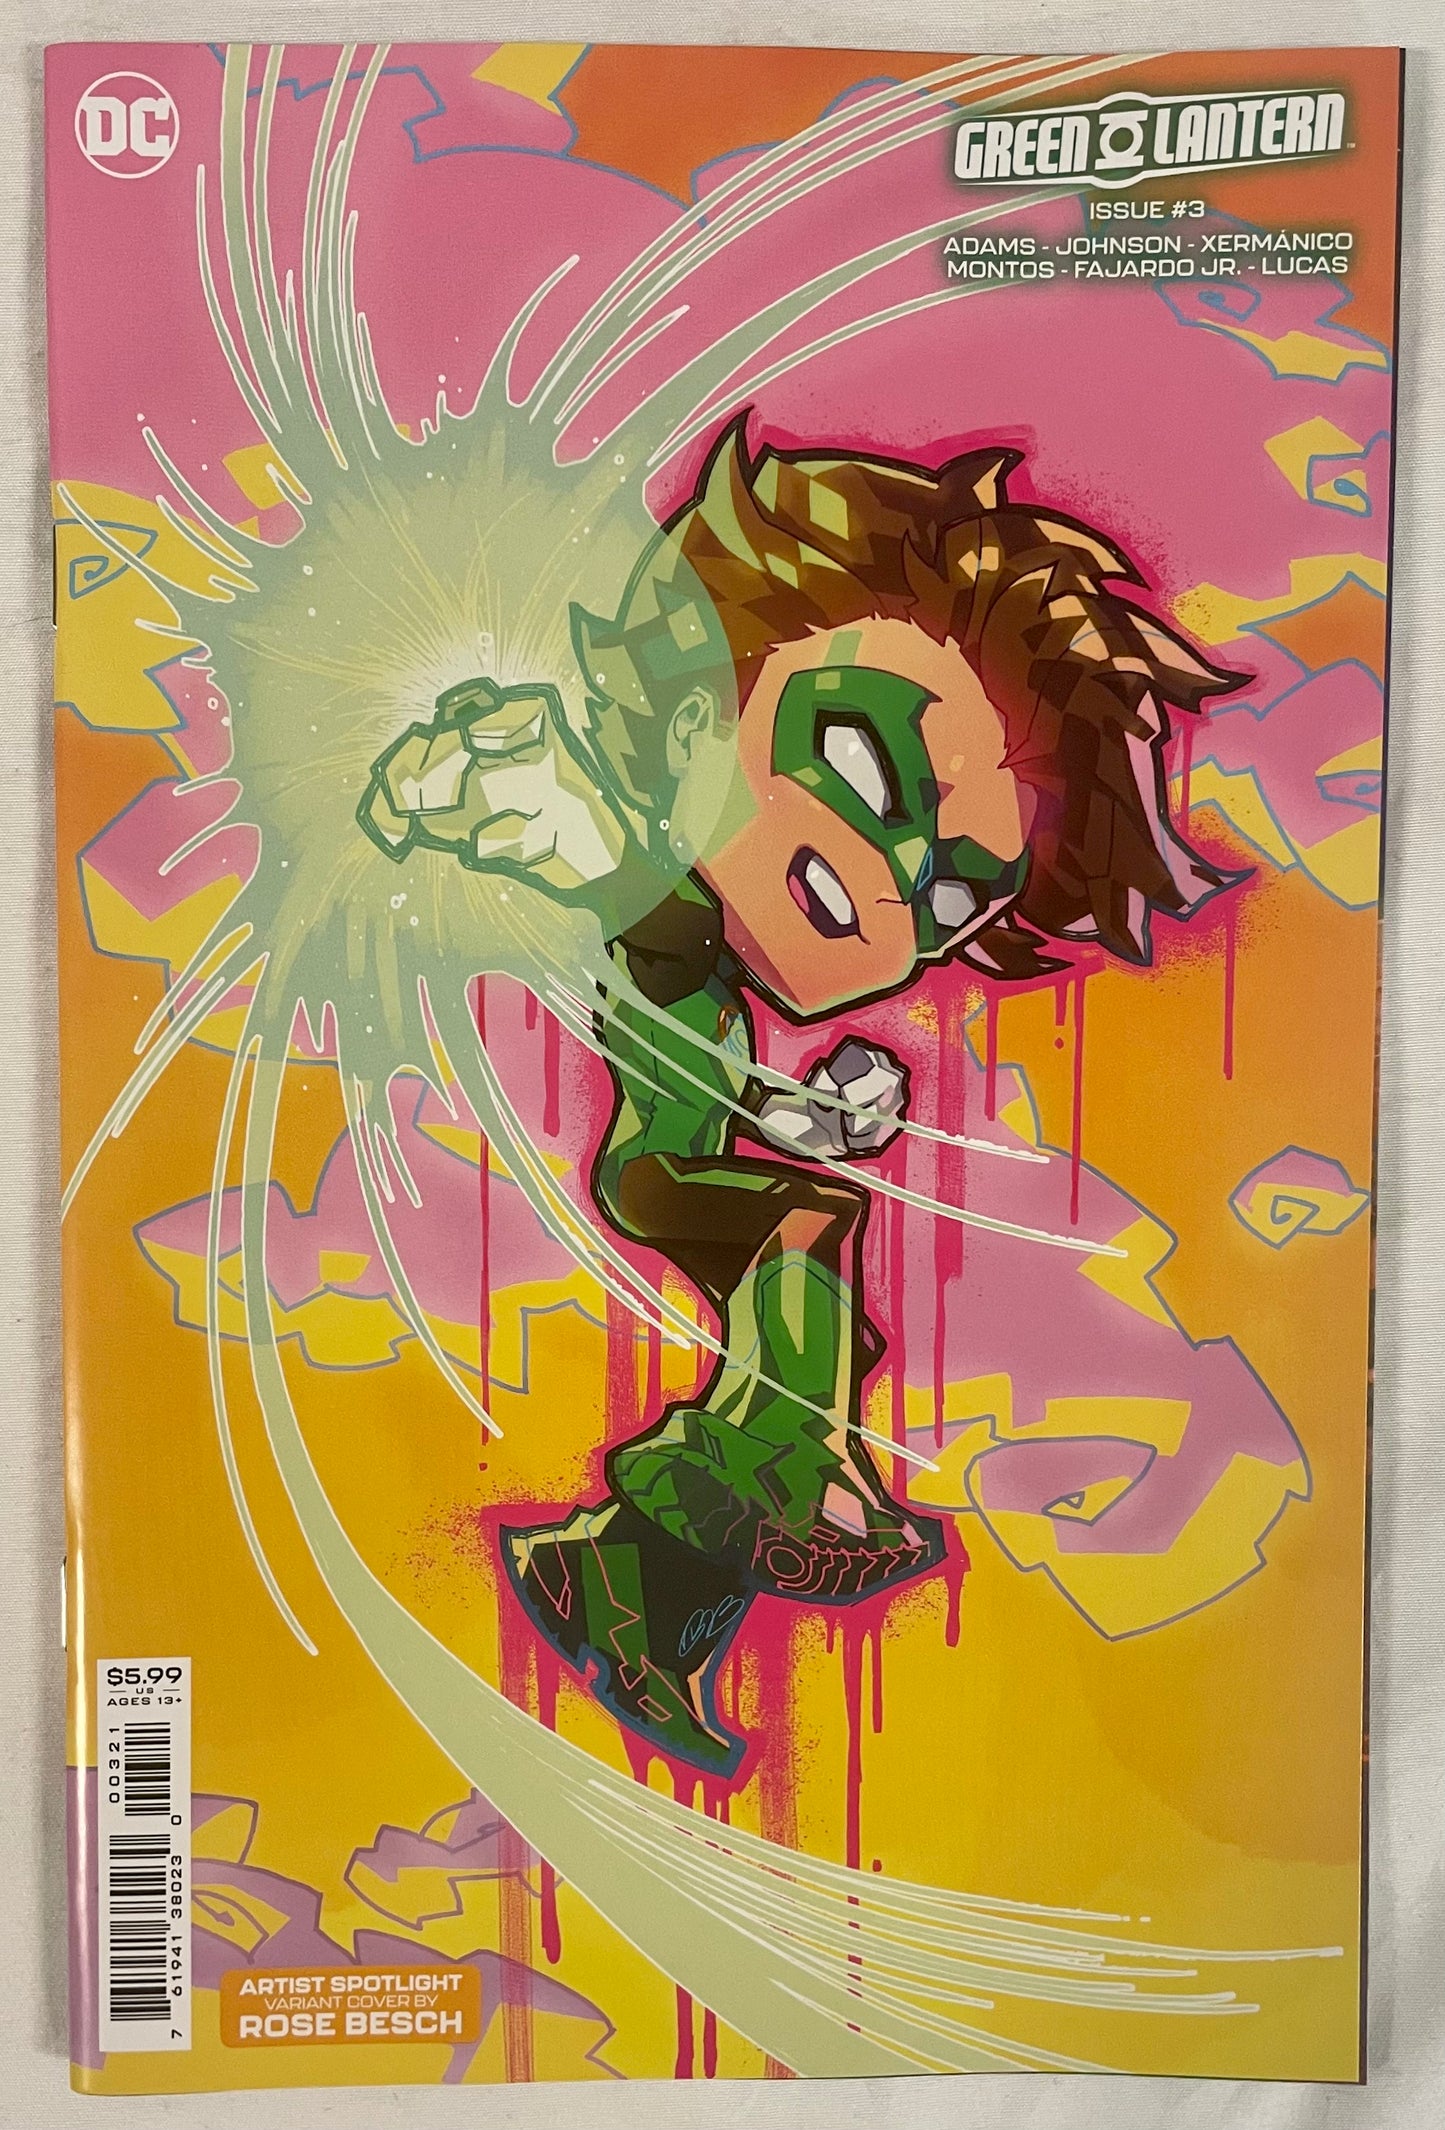 DC Comics Green Lantern Issue #3 (Rose Besch)